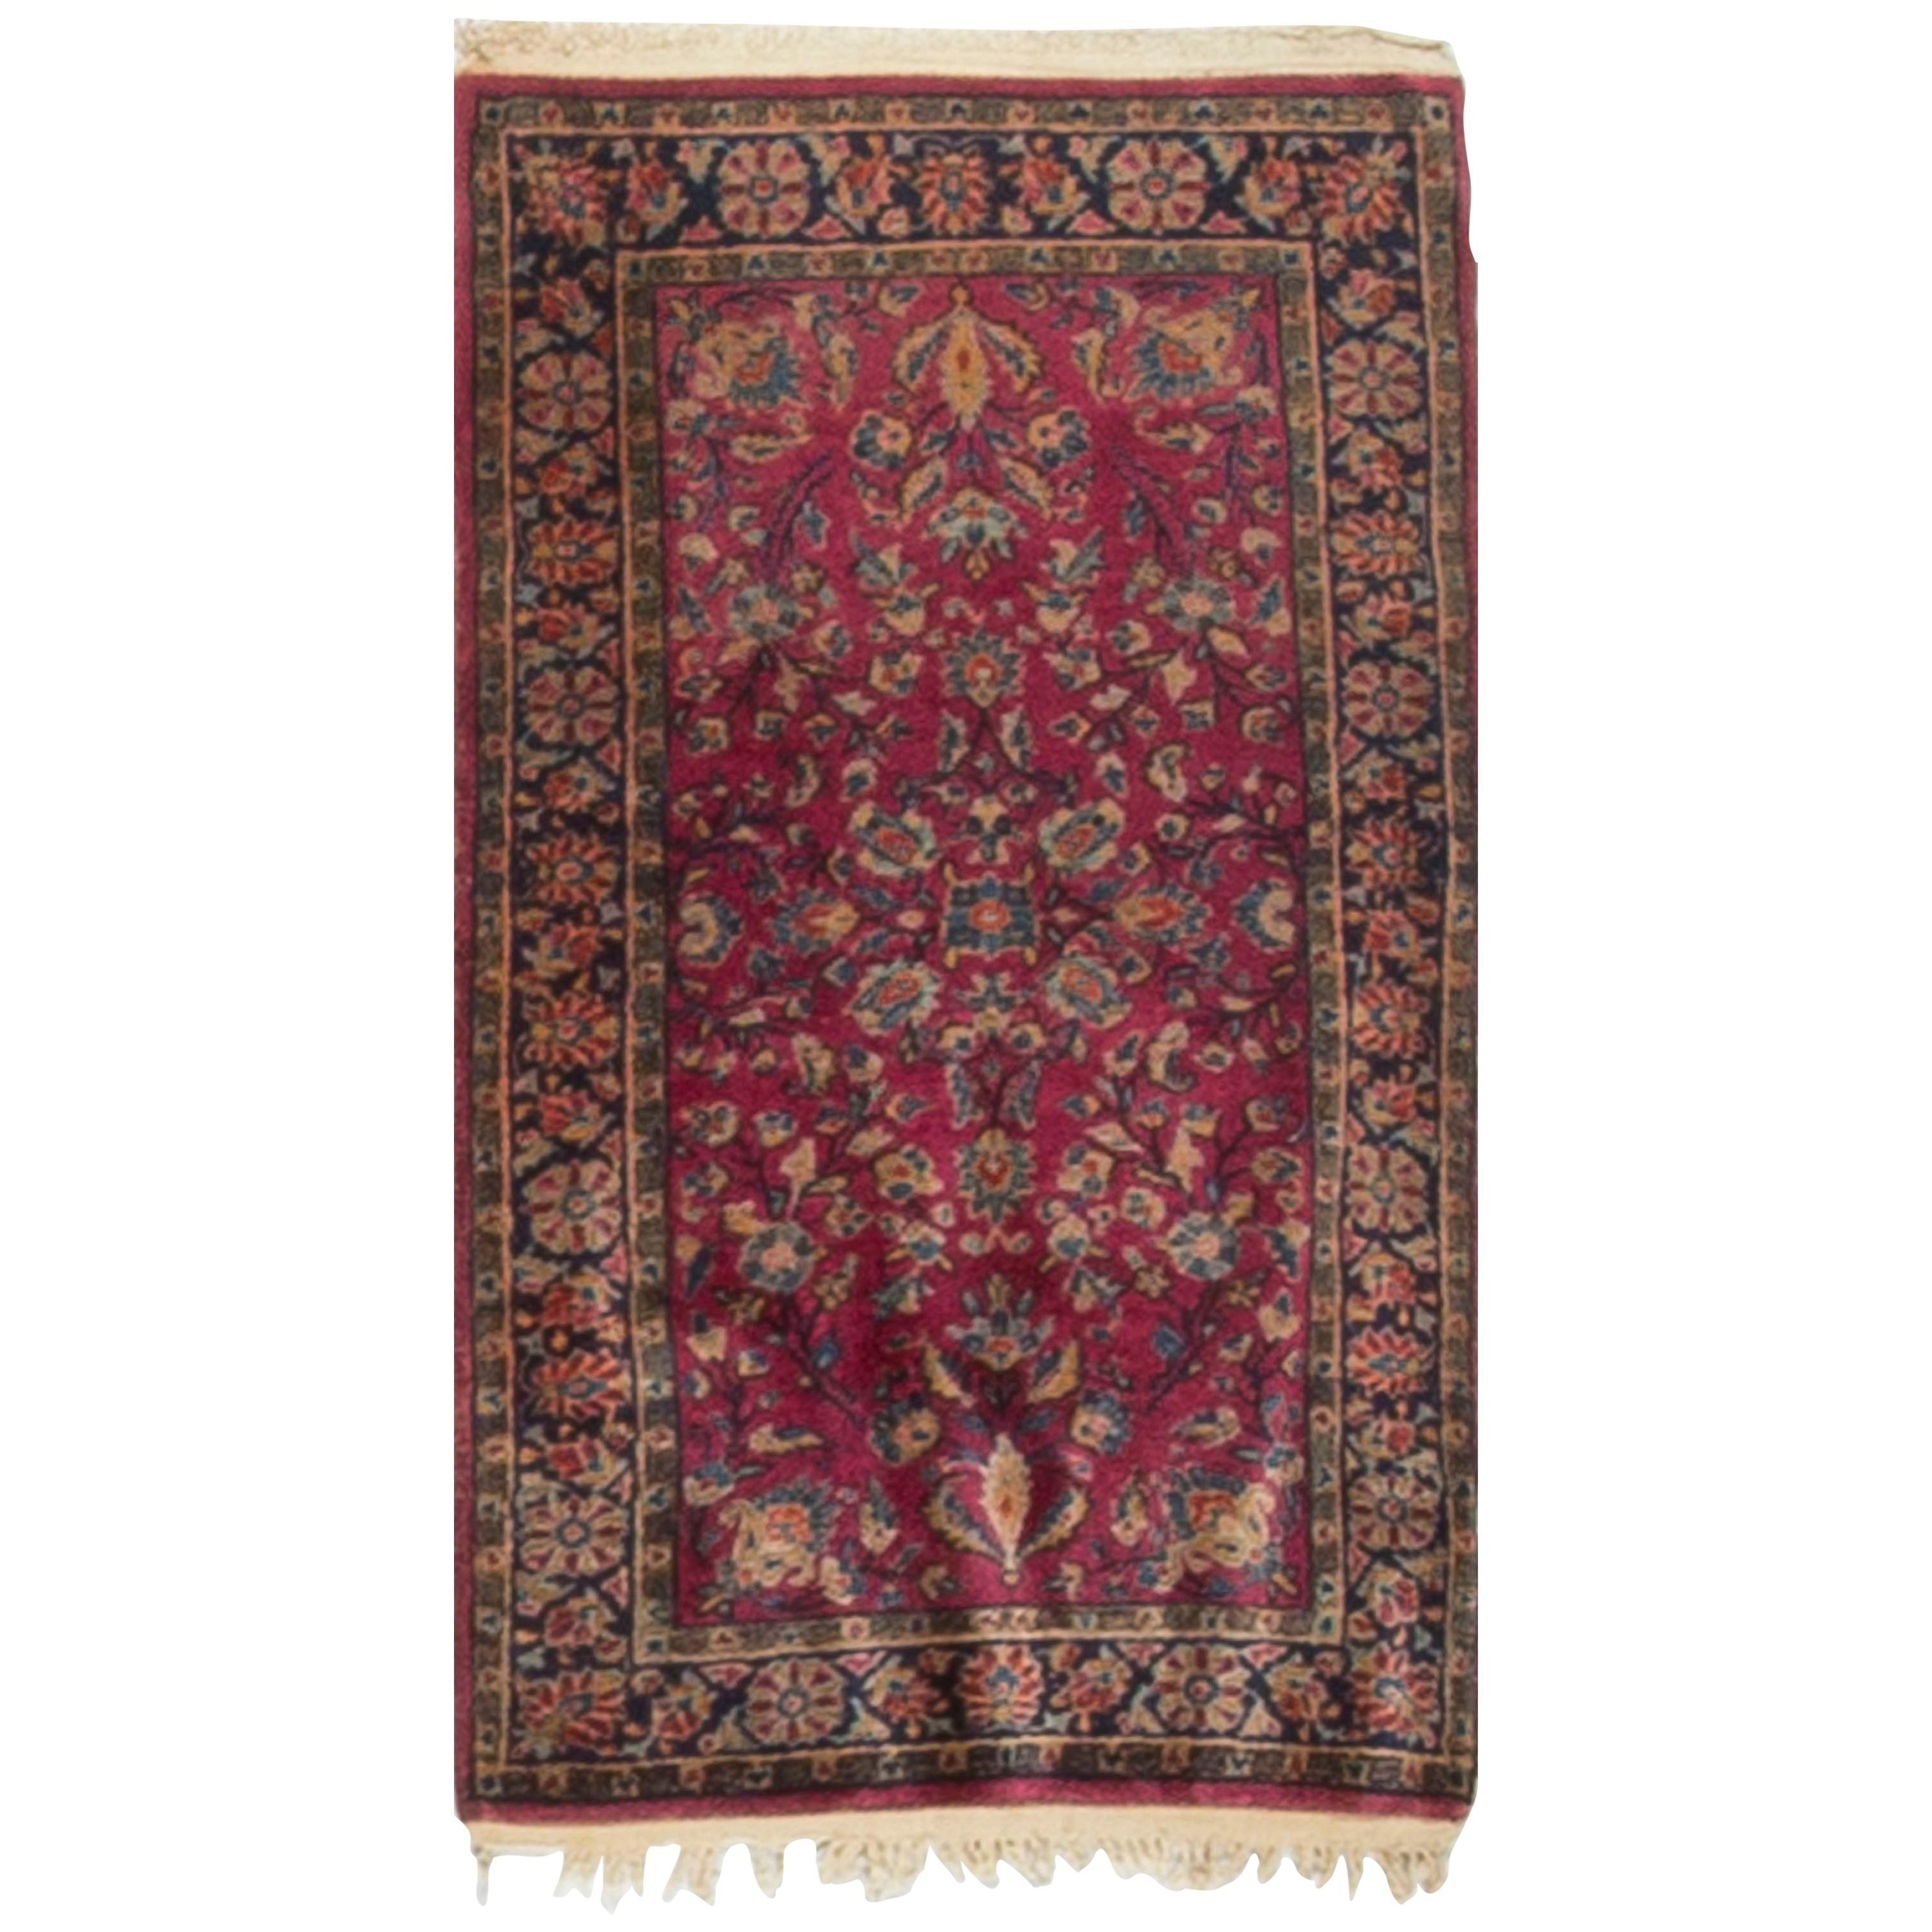 Vintage Persian Kashan Rug Carpet Circa 1920 2'1 x 3'10